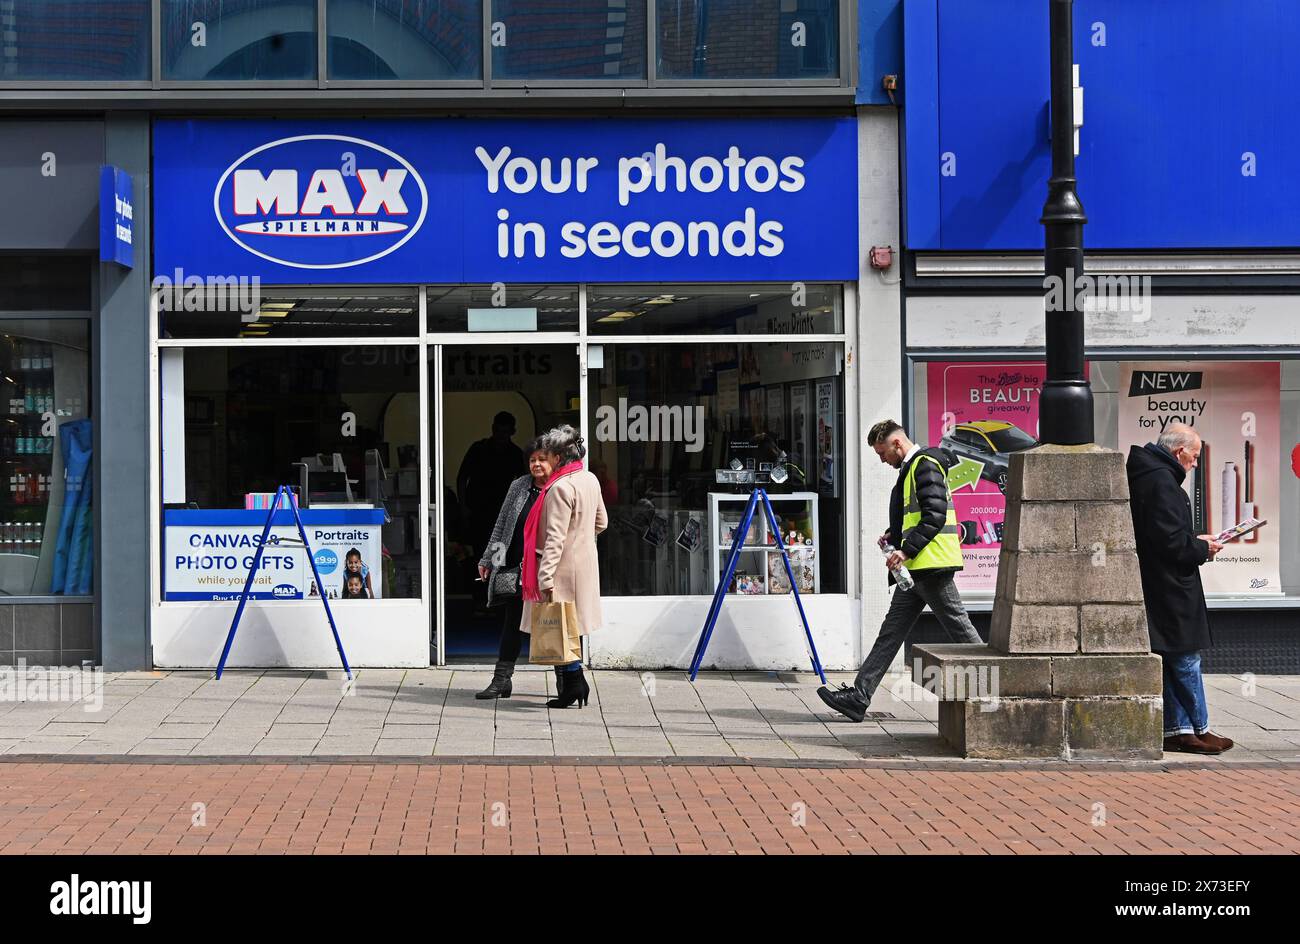 Negozio davanti. Max Spielmann le tue foto in pochi secondi. Park Street, Walsall, West Midlands, Inghilterra, Regno Unito, Europa. Foto Stock